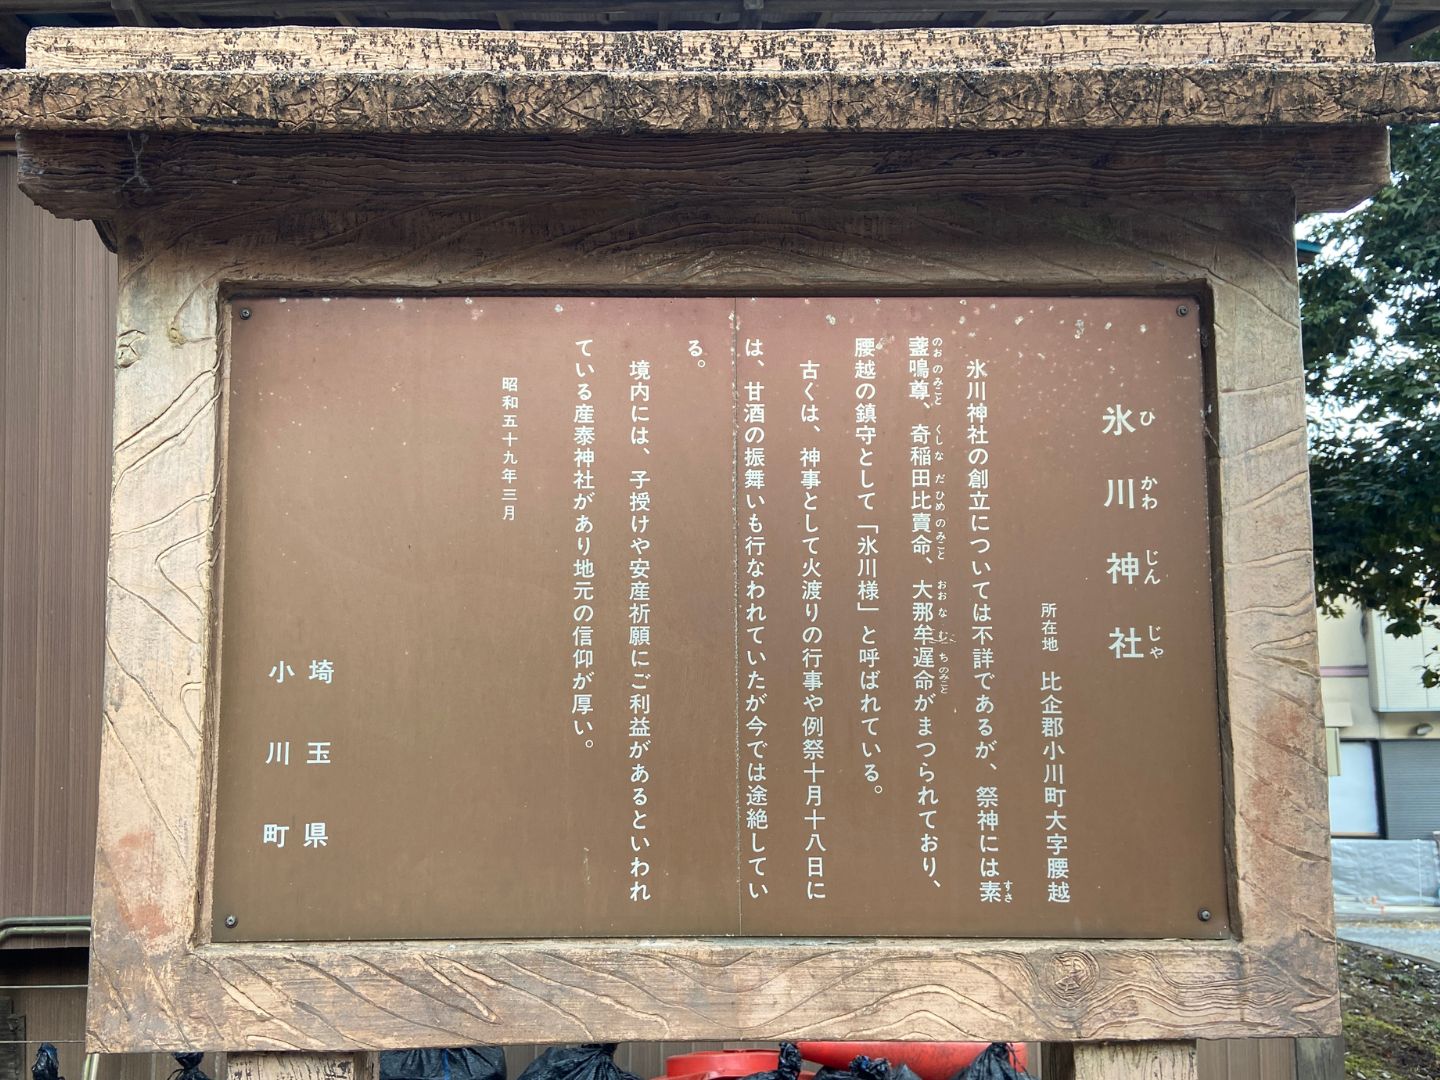 腰越氷川神社 小川町が建てた案内看板